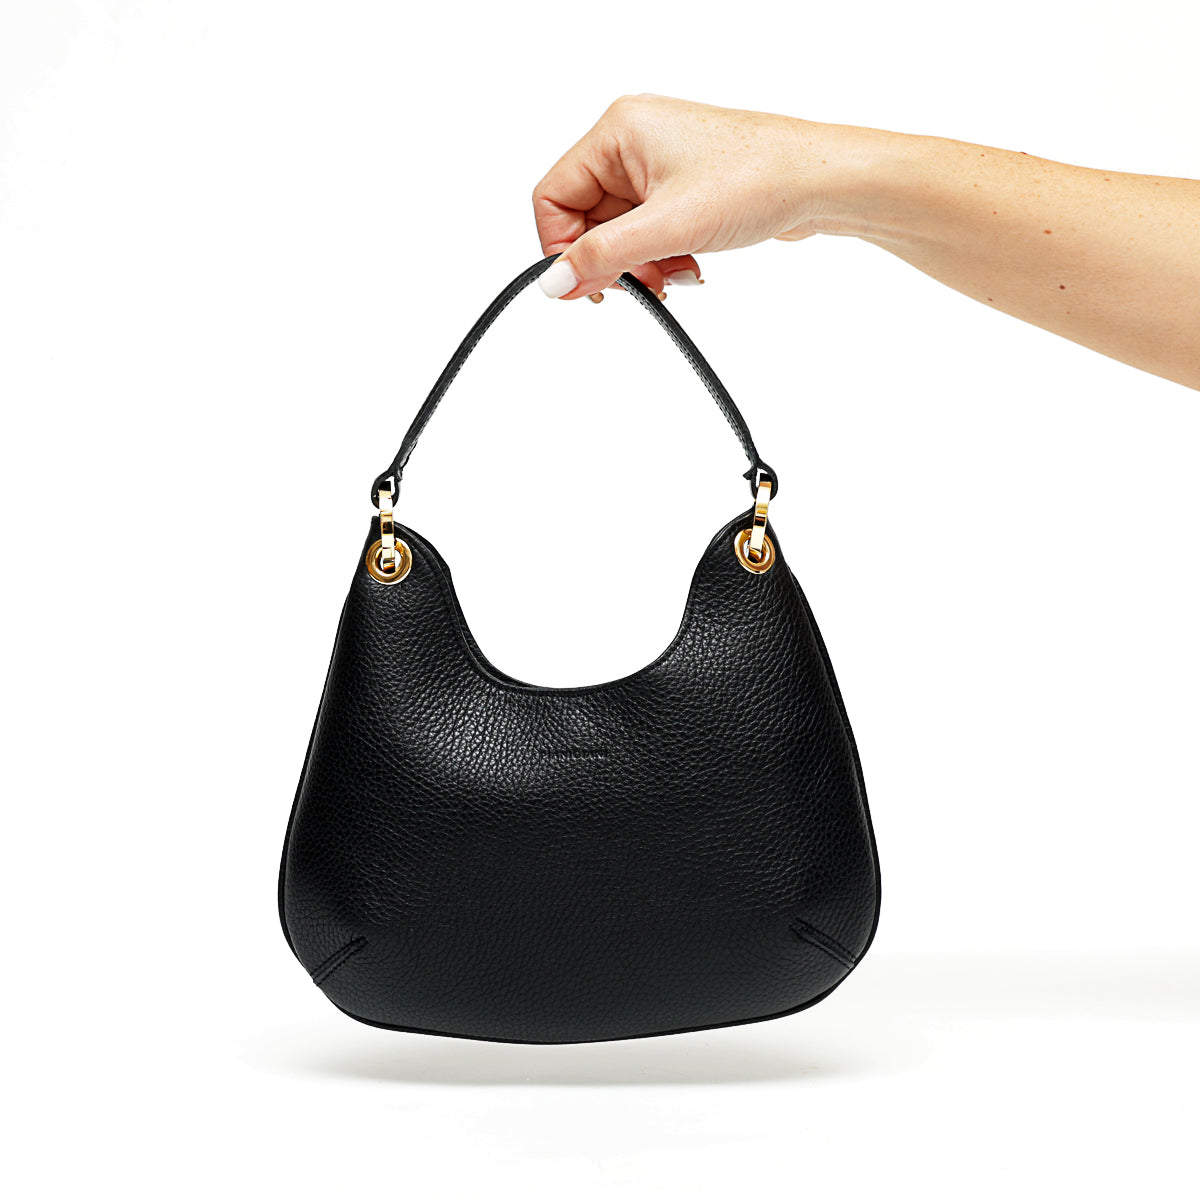 Mini Lou, borsa da donna in pelle martellata nera con tracolla, misure larghezza cm 23, altezza cm 19, profondità cm 6, prodotta da Pianigiani